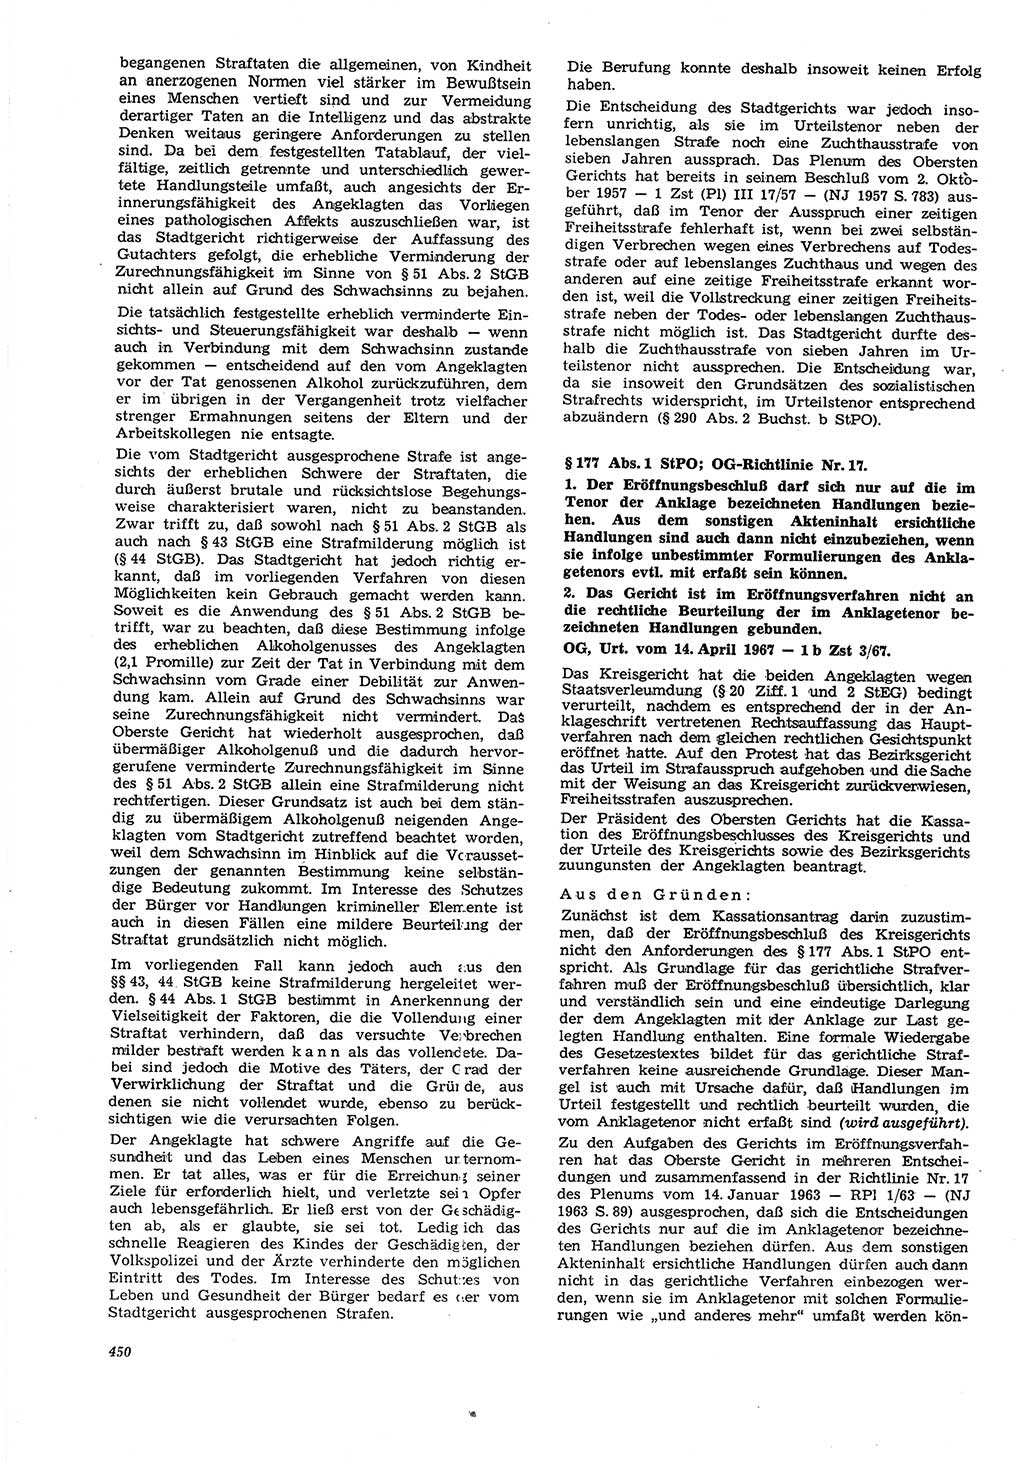 Neue Justiz (NJ), Zeitschrift für Recht und Rechtswissenschaft [Deutsche Demokratische Republik (DDR)], 21. Jahrgang 1967, Seite 450 (NJ DDR 1967, S. 450)